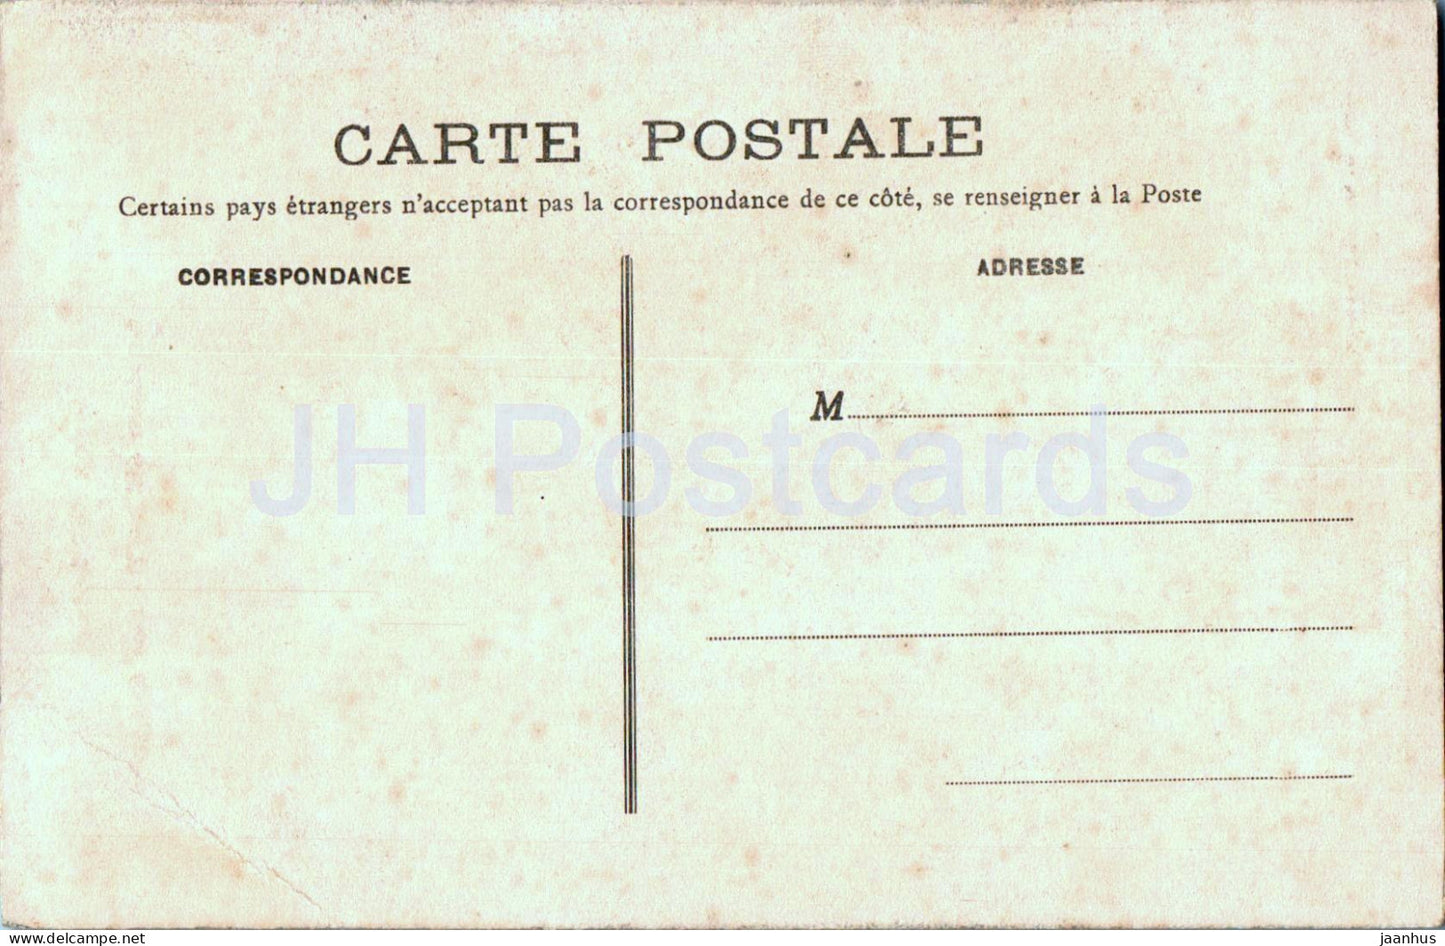 Chateau d'Argy - Les Galeries - Chateaux de l'Indre - Schloss - 3004 - alte Postkarte - Frankreich - unbenutzt 